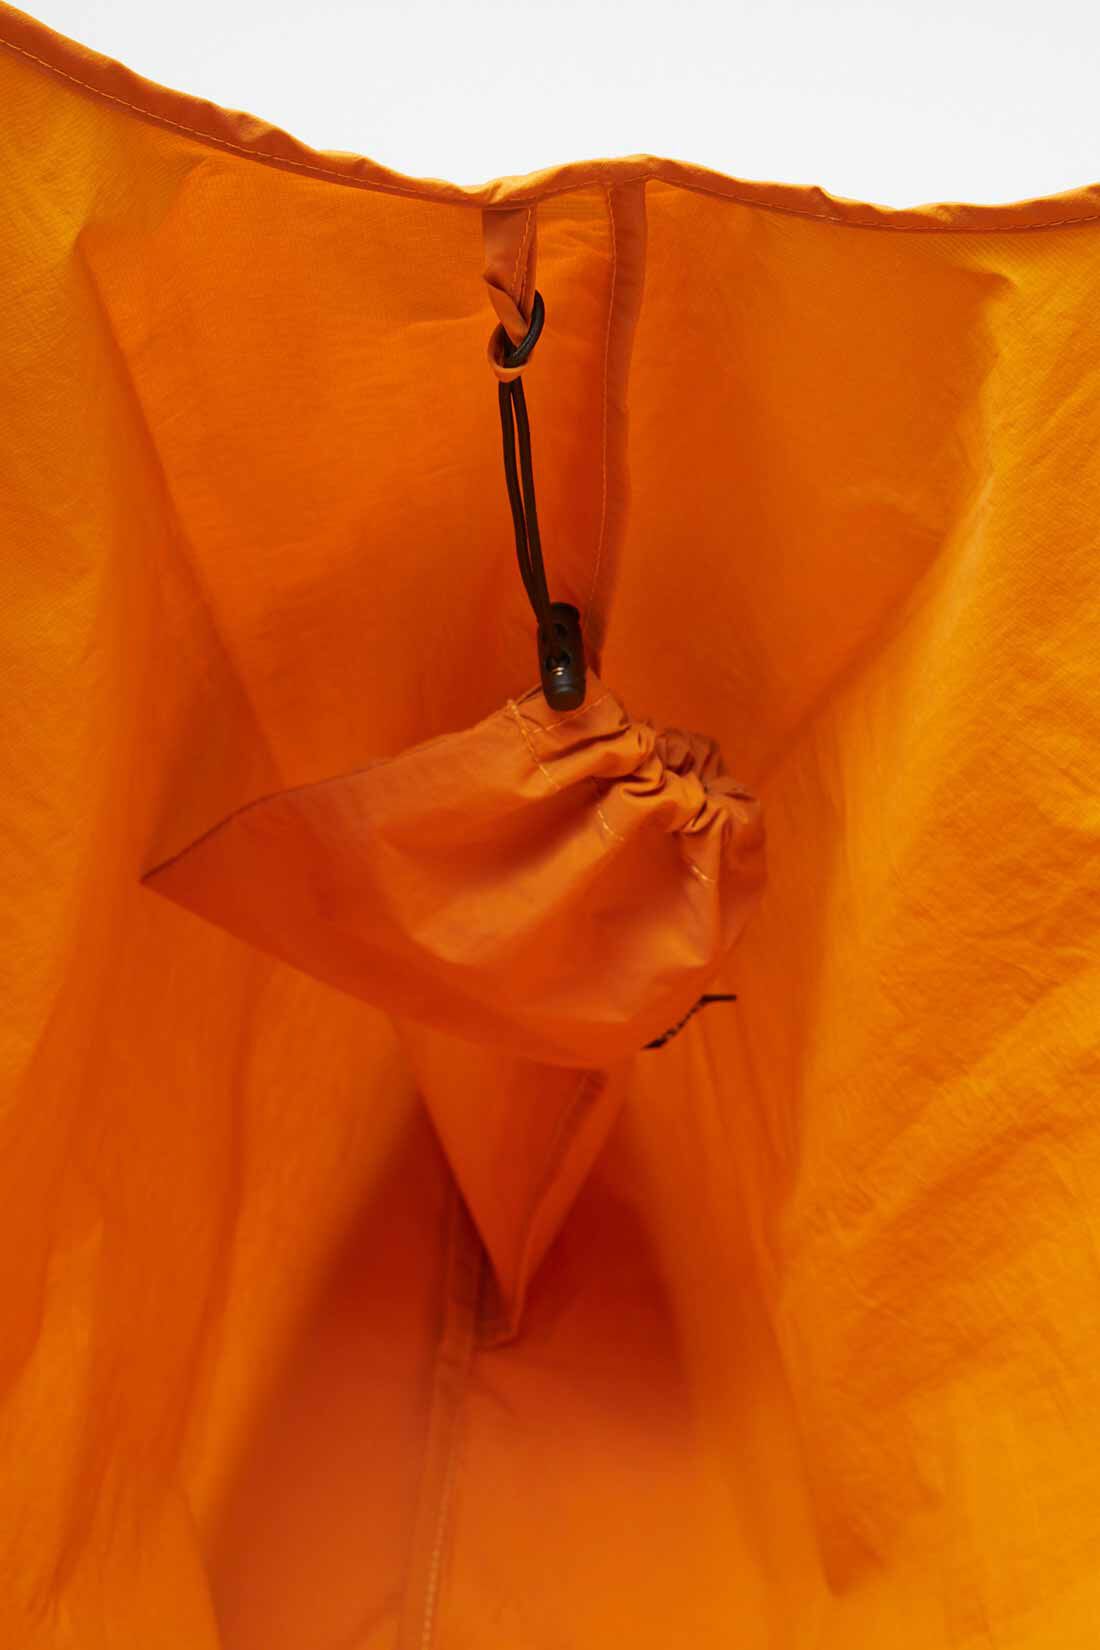 THREE FIFTY STANDARD|THREE FIFTY STANDARD コンパクトなオレンジ色のエコバッグ|バッグの内側には、収納用ポーチを付けられるフープも。